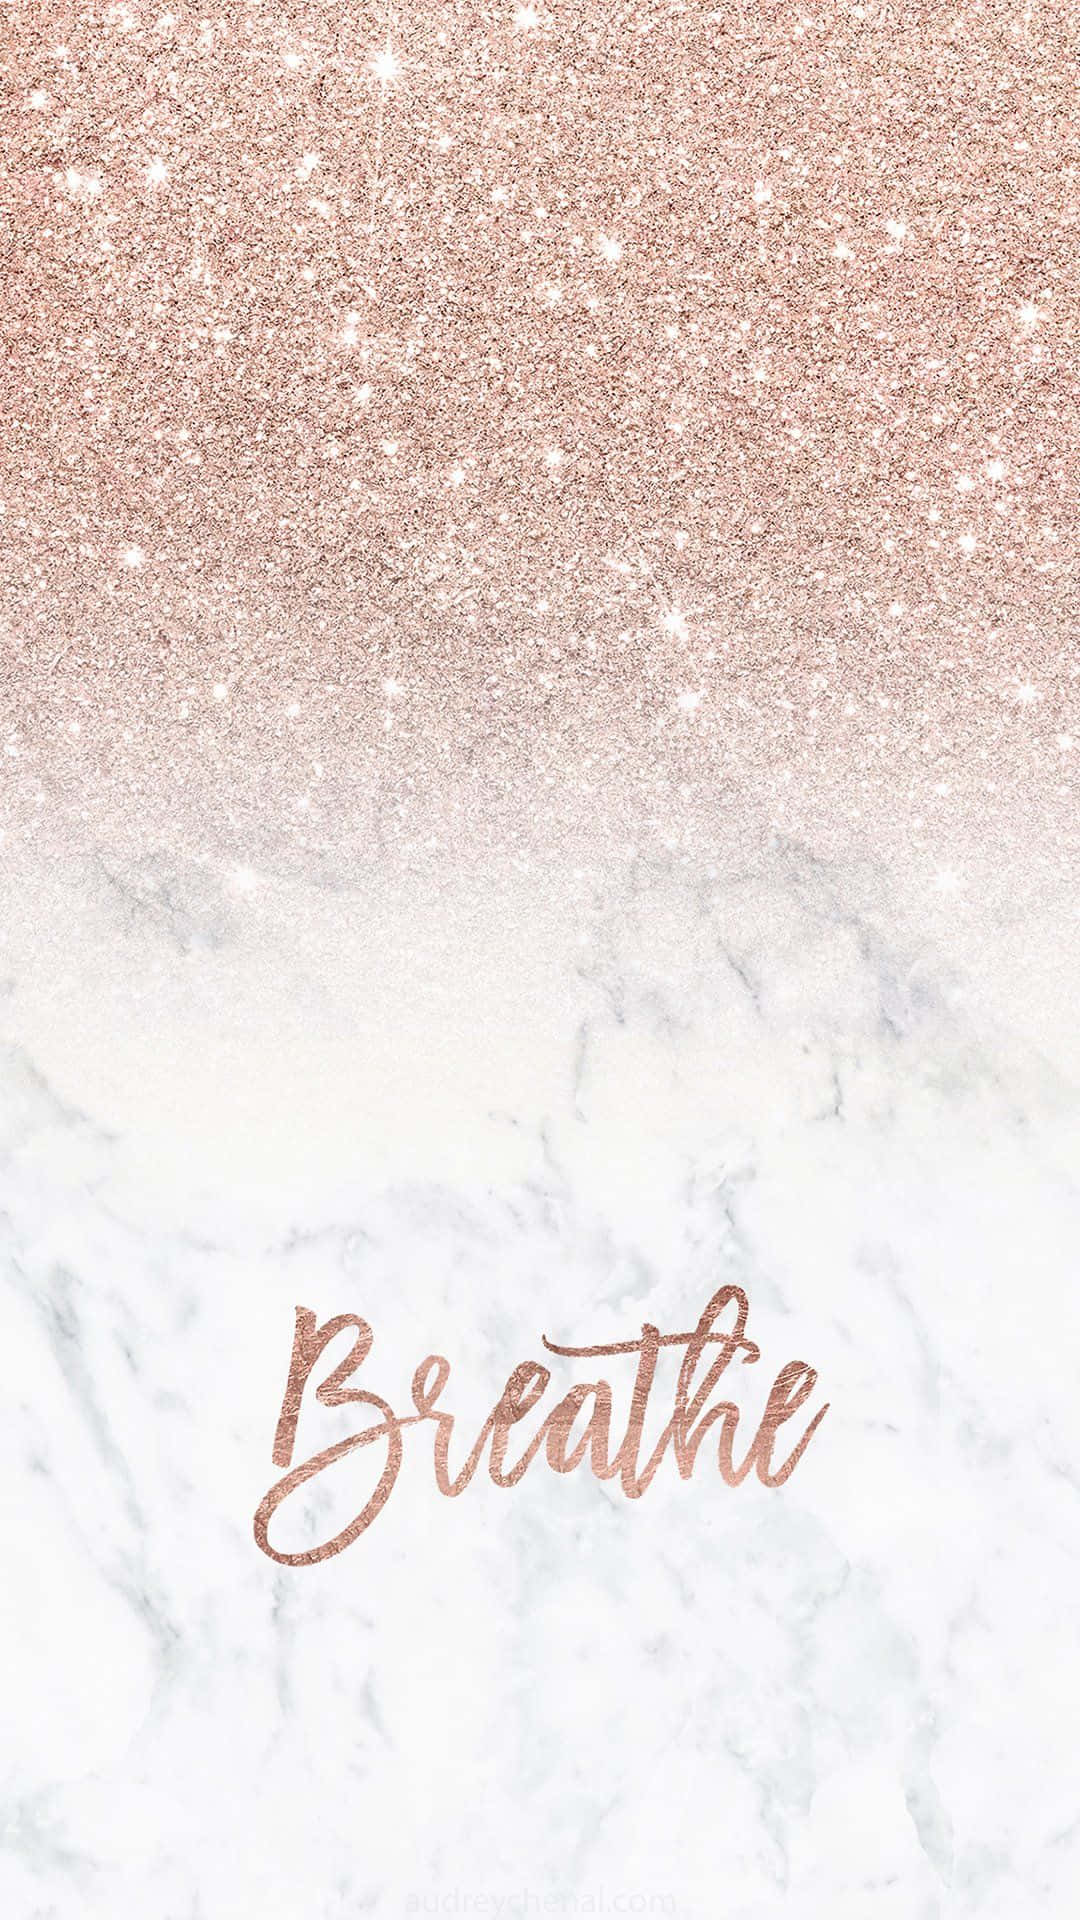 Breathe Wallpaper - Breathe Wallpaper Wallpaper